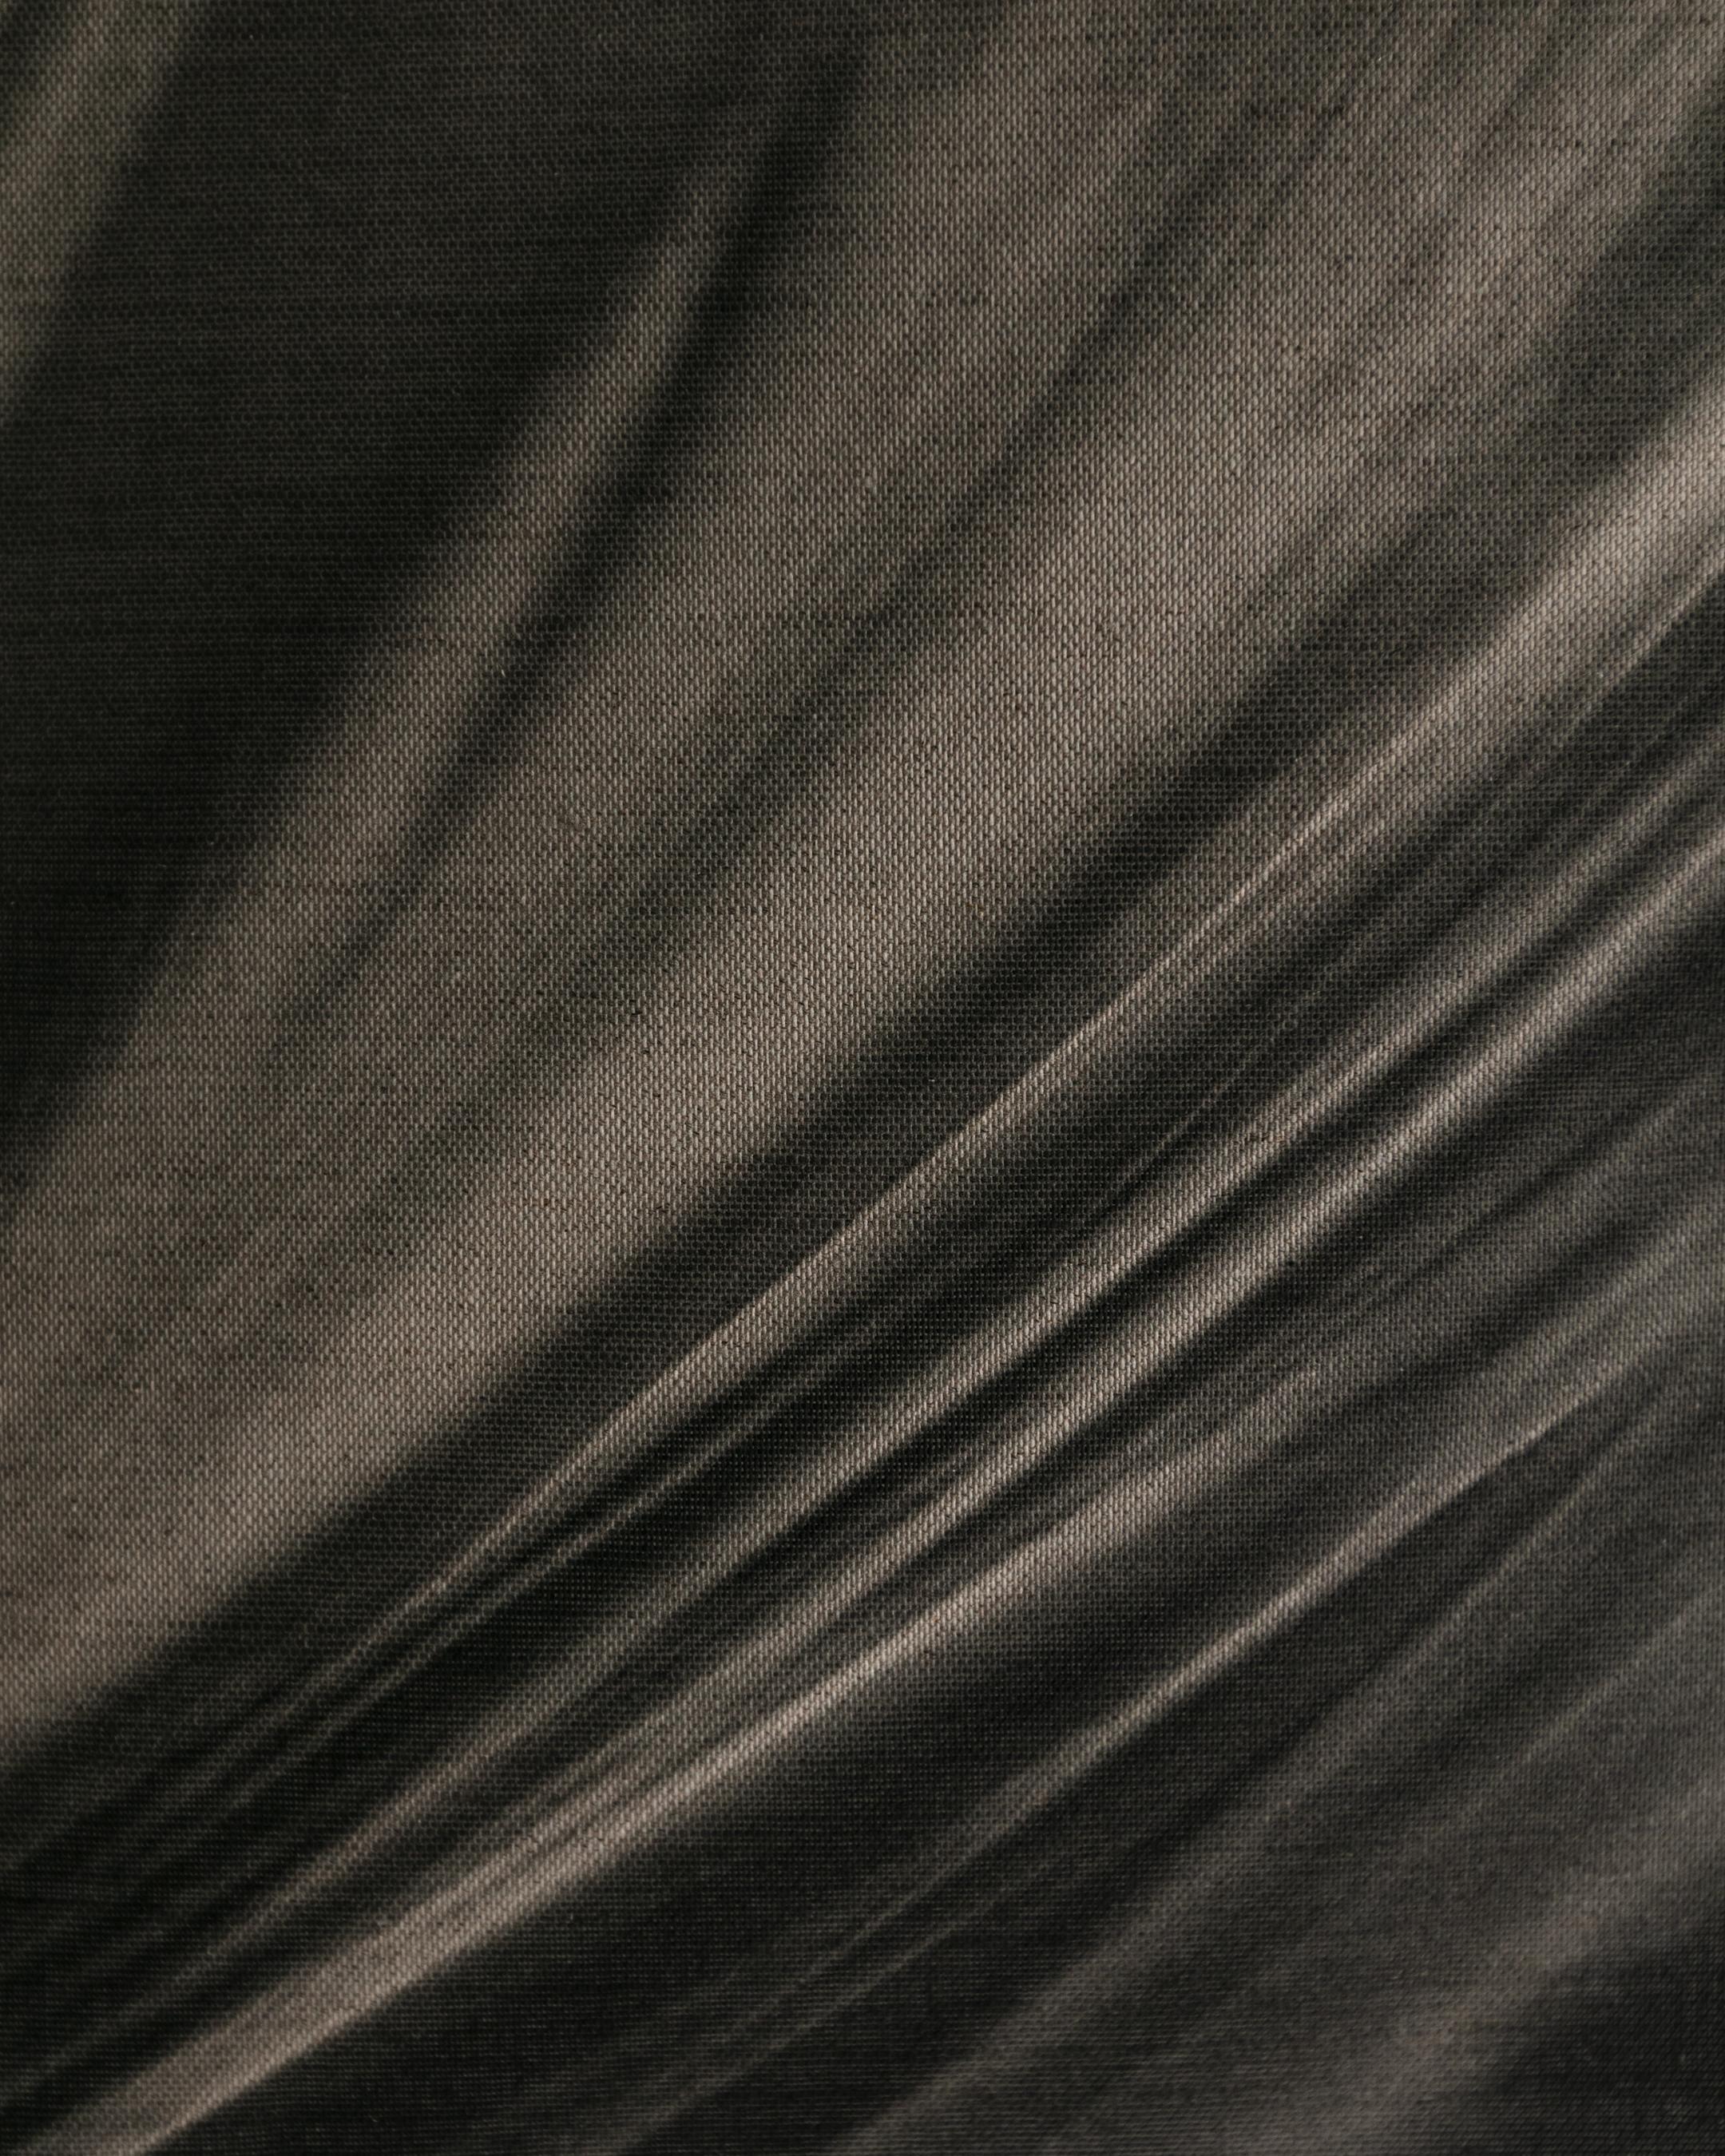 Windgestreckter Tagtraum – Leinen-Pigment-Leinwanddruck, limitierte Auflage 5. (Abstrakter Expressionismus), Photograph, von Ugne Pouwell